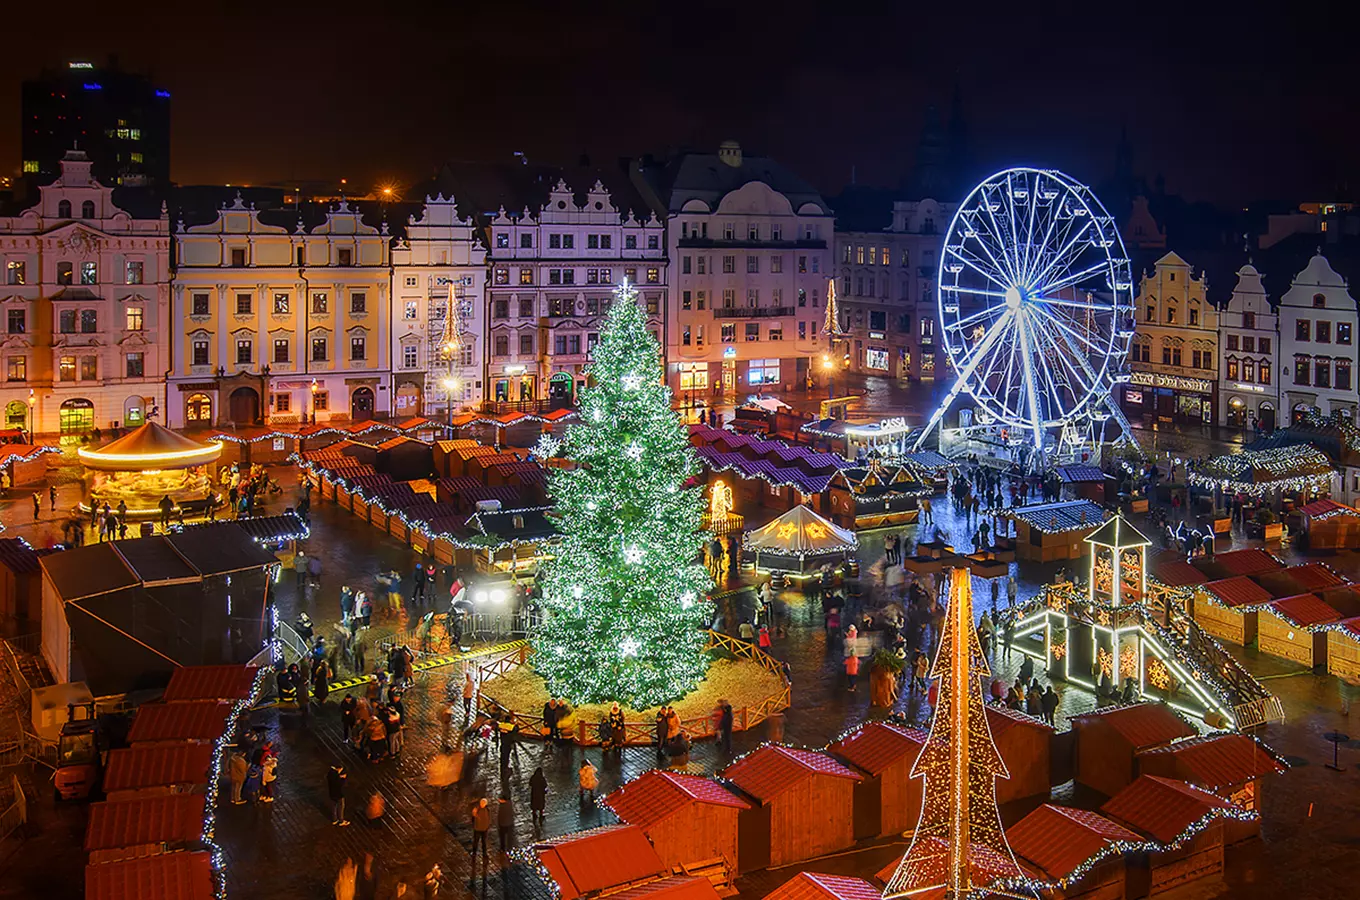 Zažijte vánoční atmosféru v ulicích a navštivte nejkrásnější adventní trhy